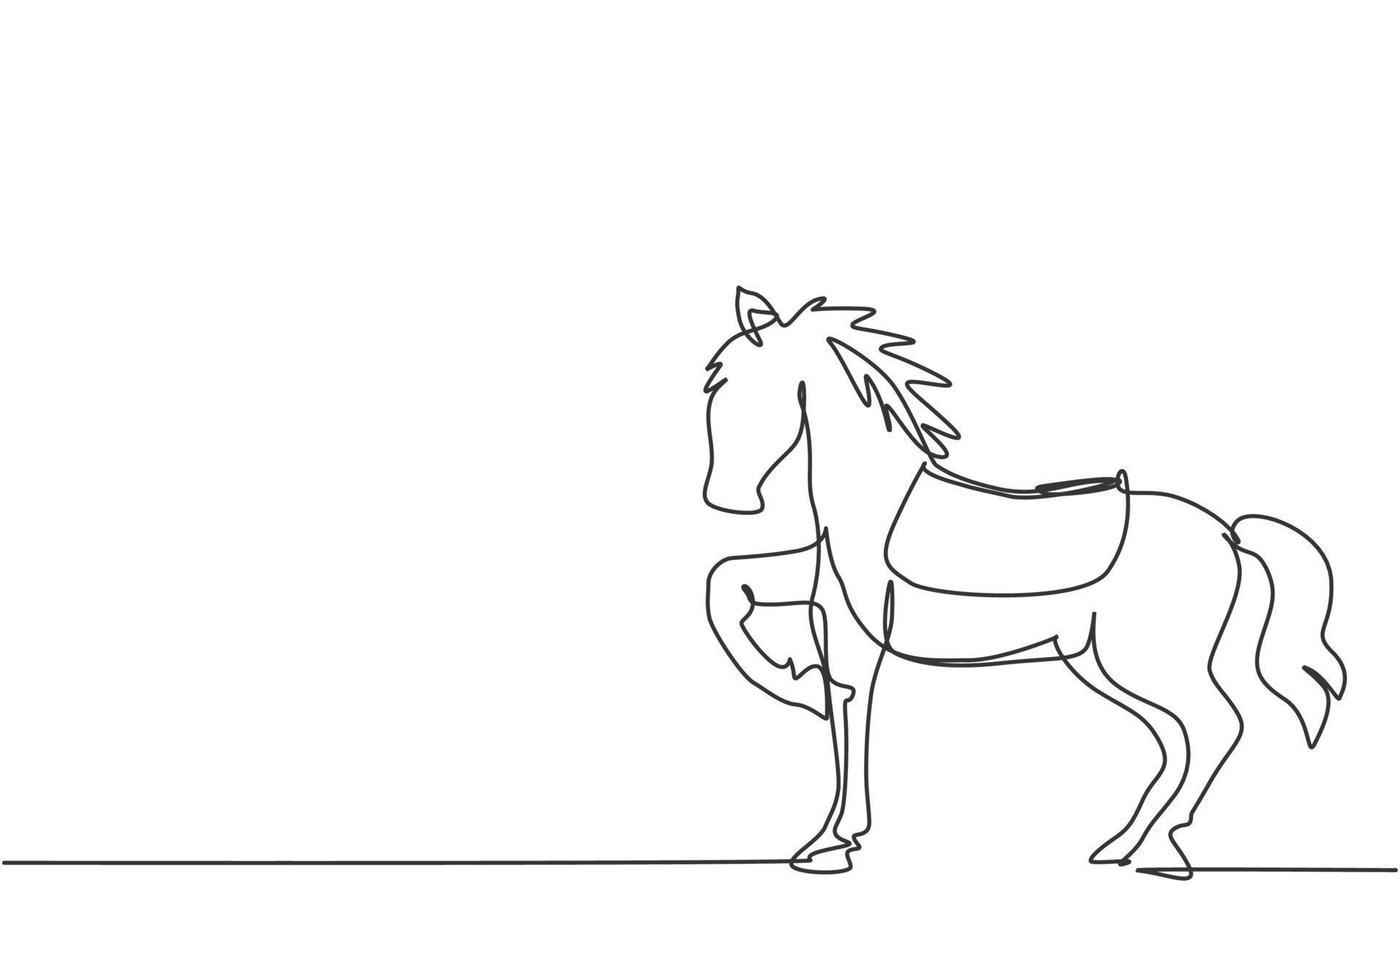 dibujo continuo de una línea, un caballo de circo se para en la arena del espectáculo, levantando una de sus patas mientras se prepara para realizar una atracción. caballo entrenado. Ilustración gráfica de vector de diseño de dibujo de una línea.